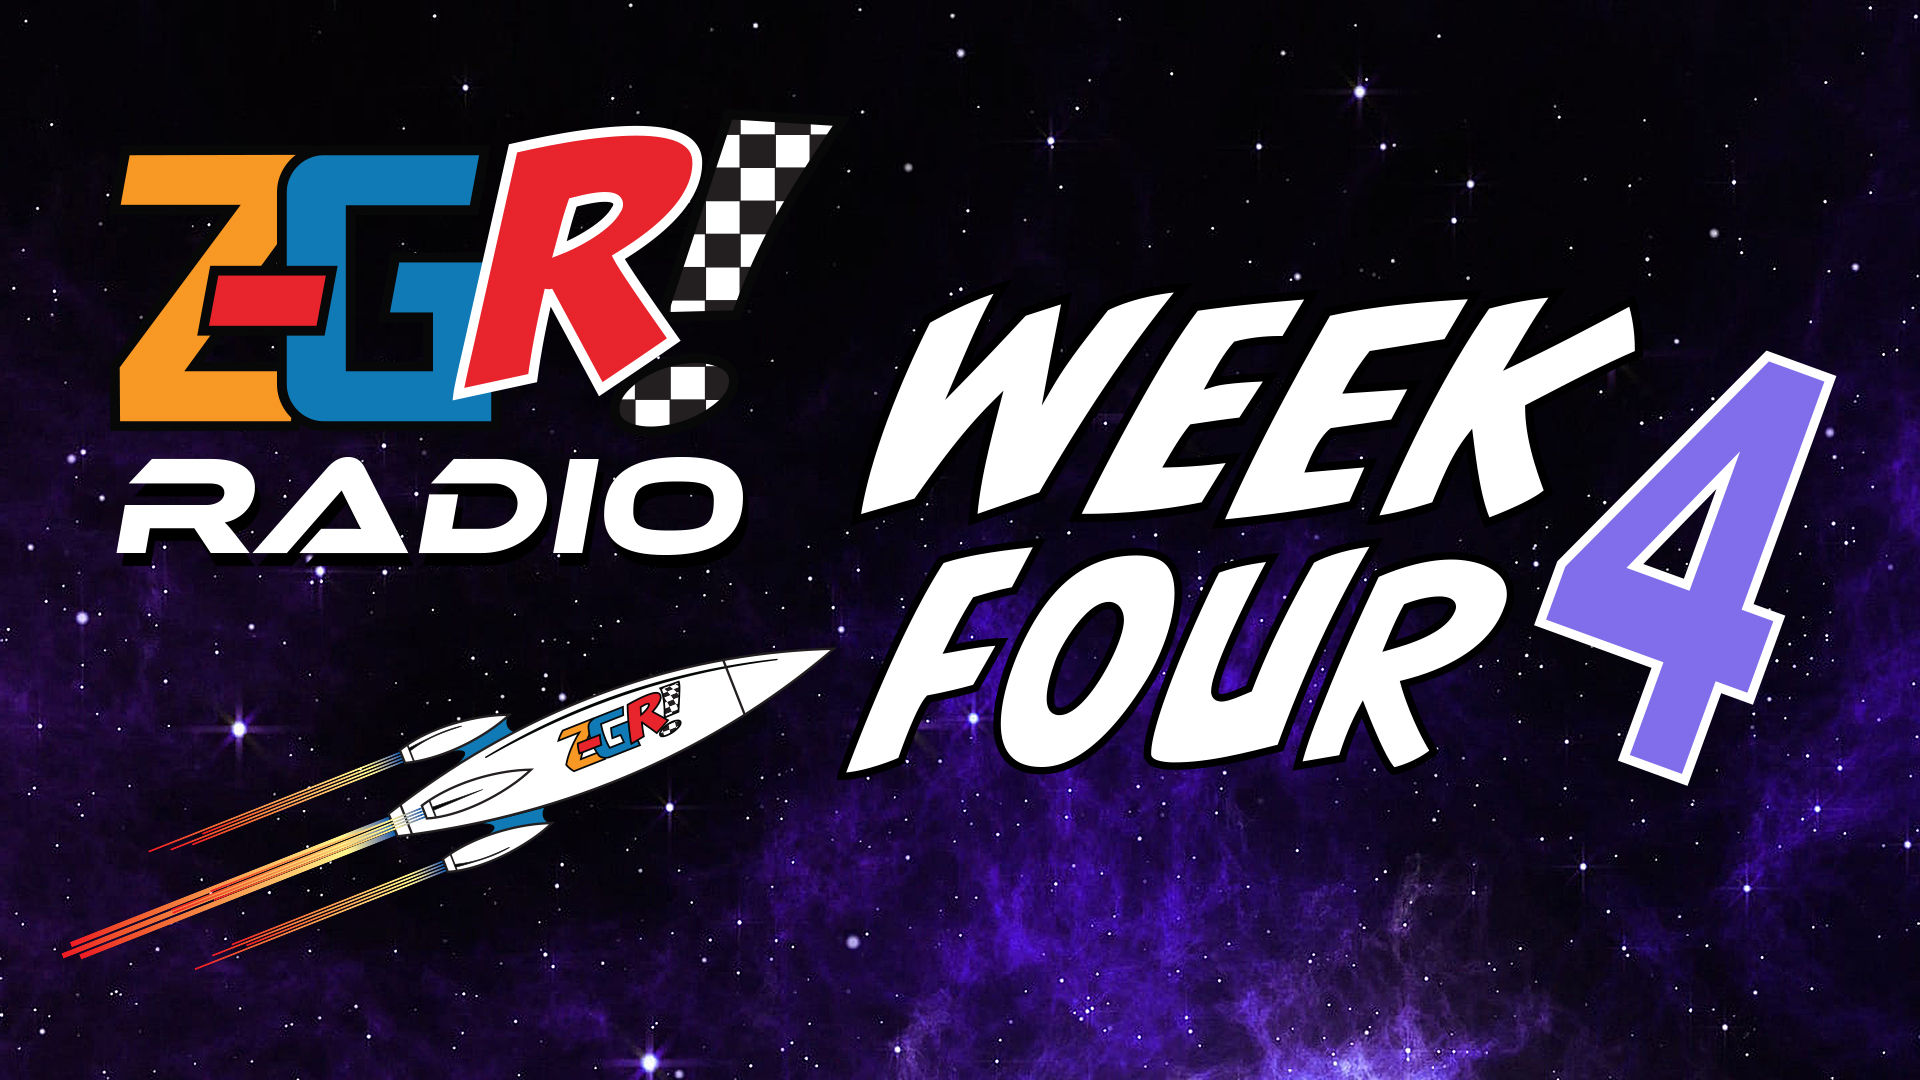 Z-GR! Radio Week Four Wrap-Up